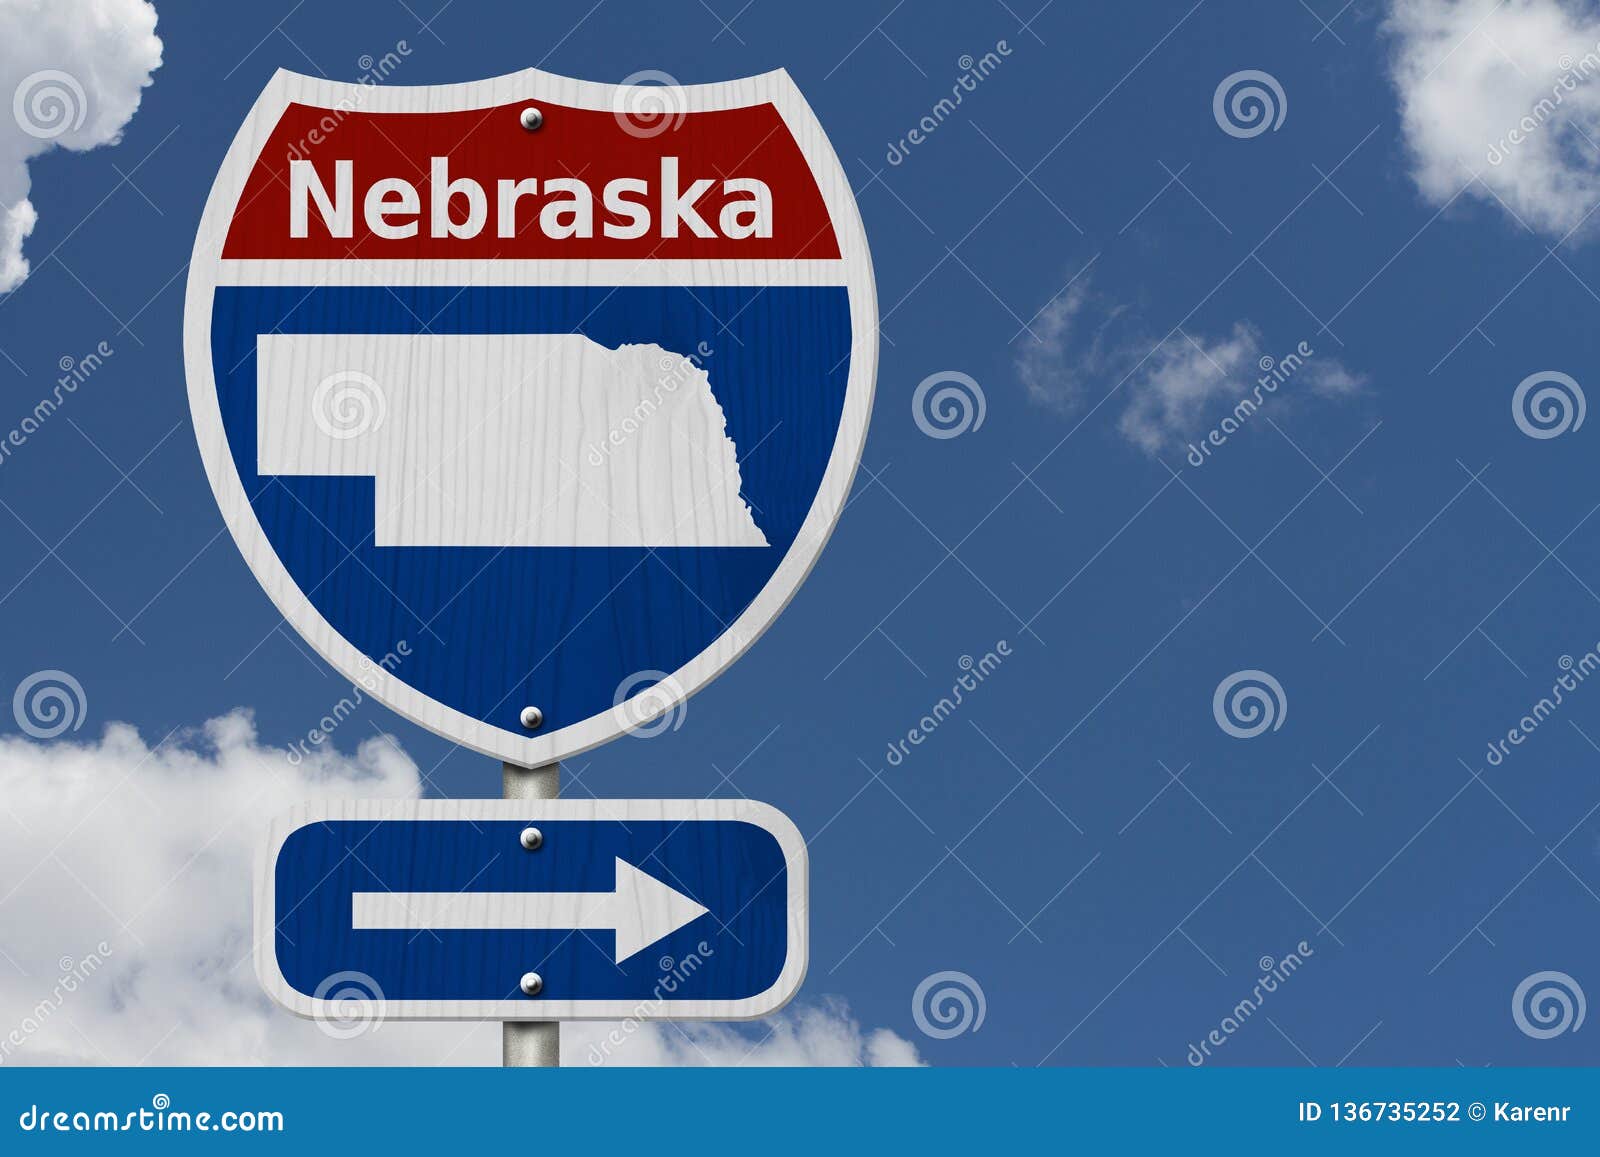 road trip to nebraska with sky